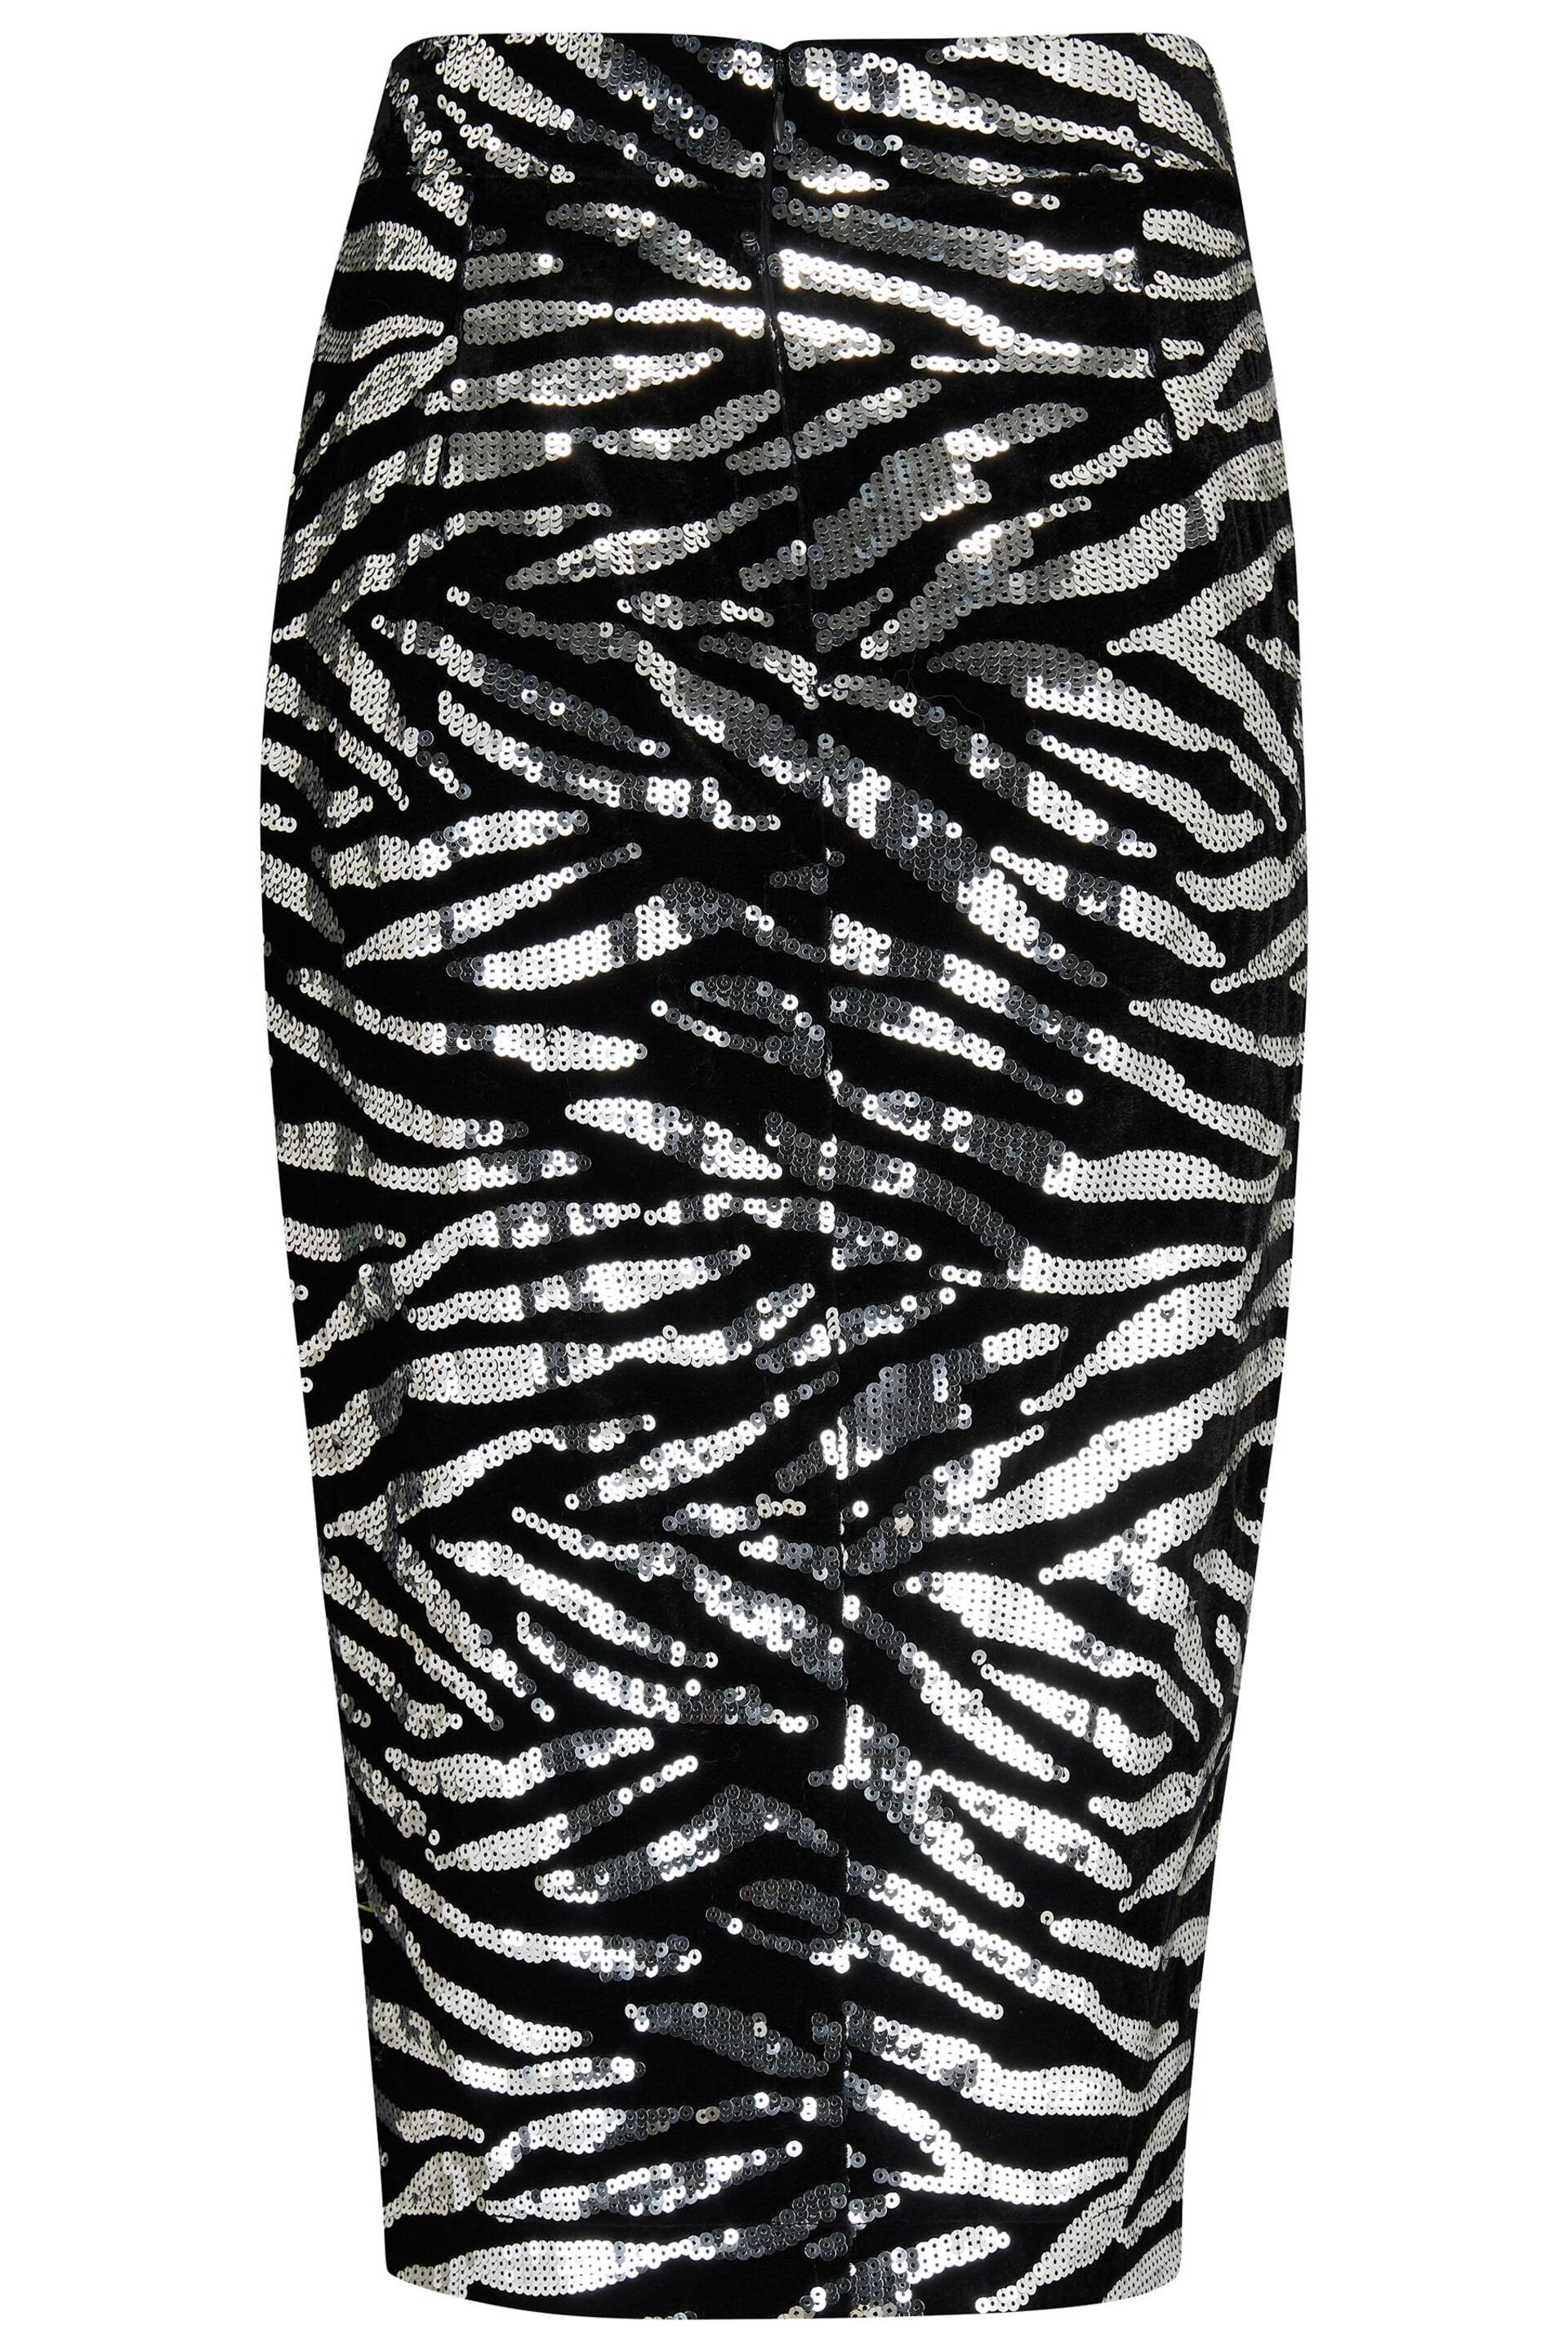 Pour Moi Black Zebra Selena Velvet Sequin Midi Skirt - Image 5 of 5